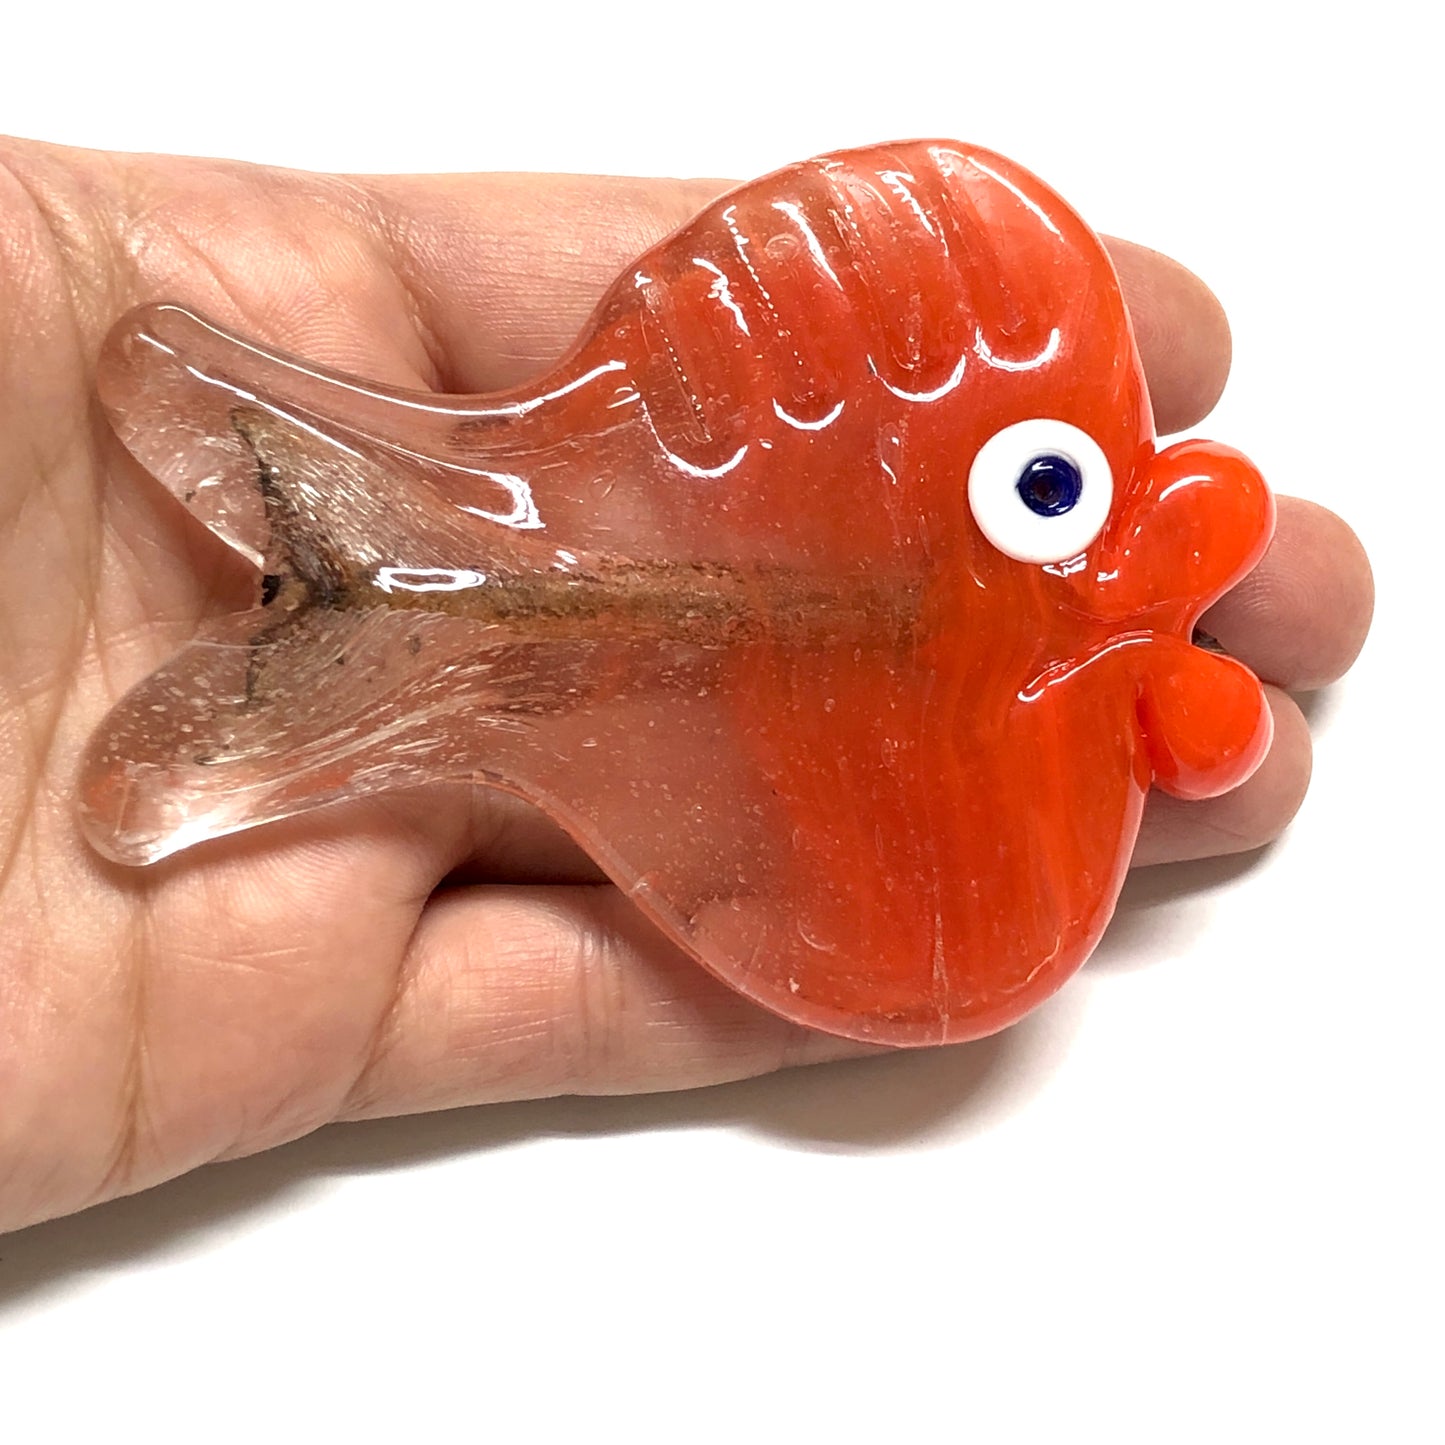 Büyük Boy Balık Cam Ocak Boncuğu - Turuncu